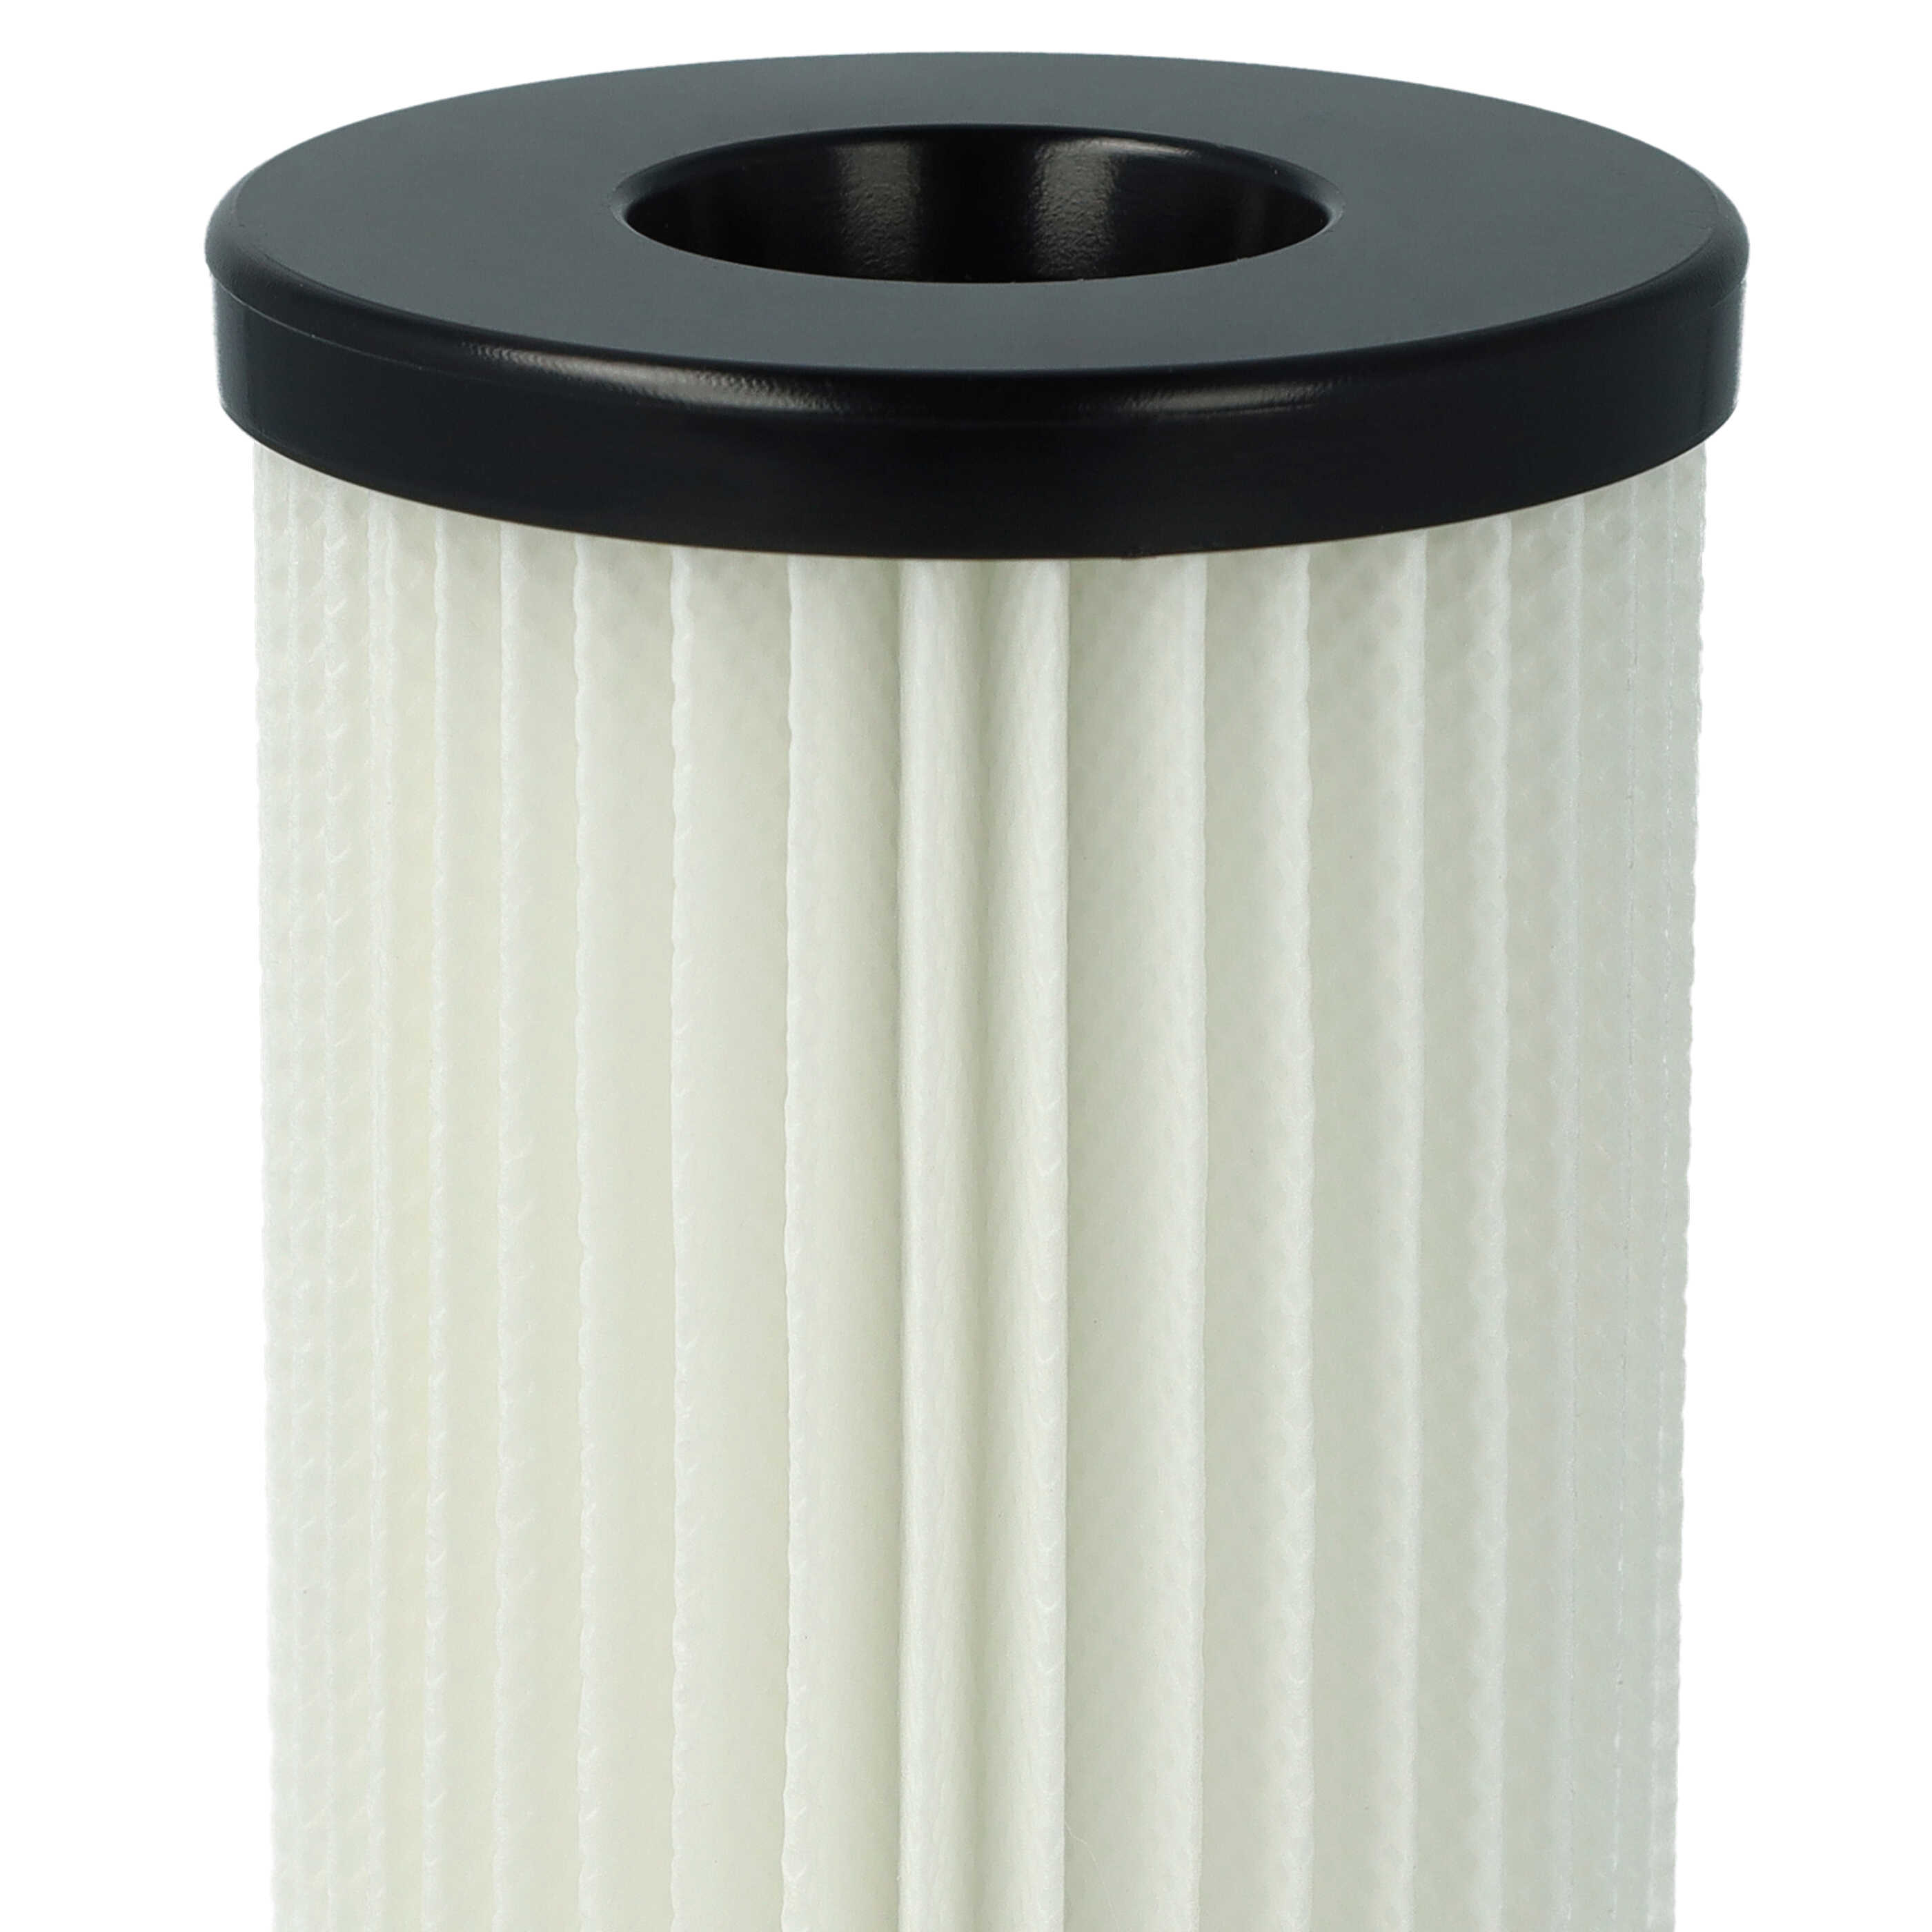 3x Filtres pour aspirateur Bomann et autres - filtre HEPA